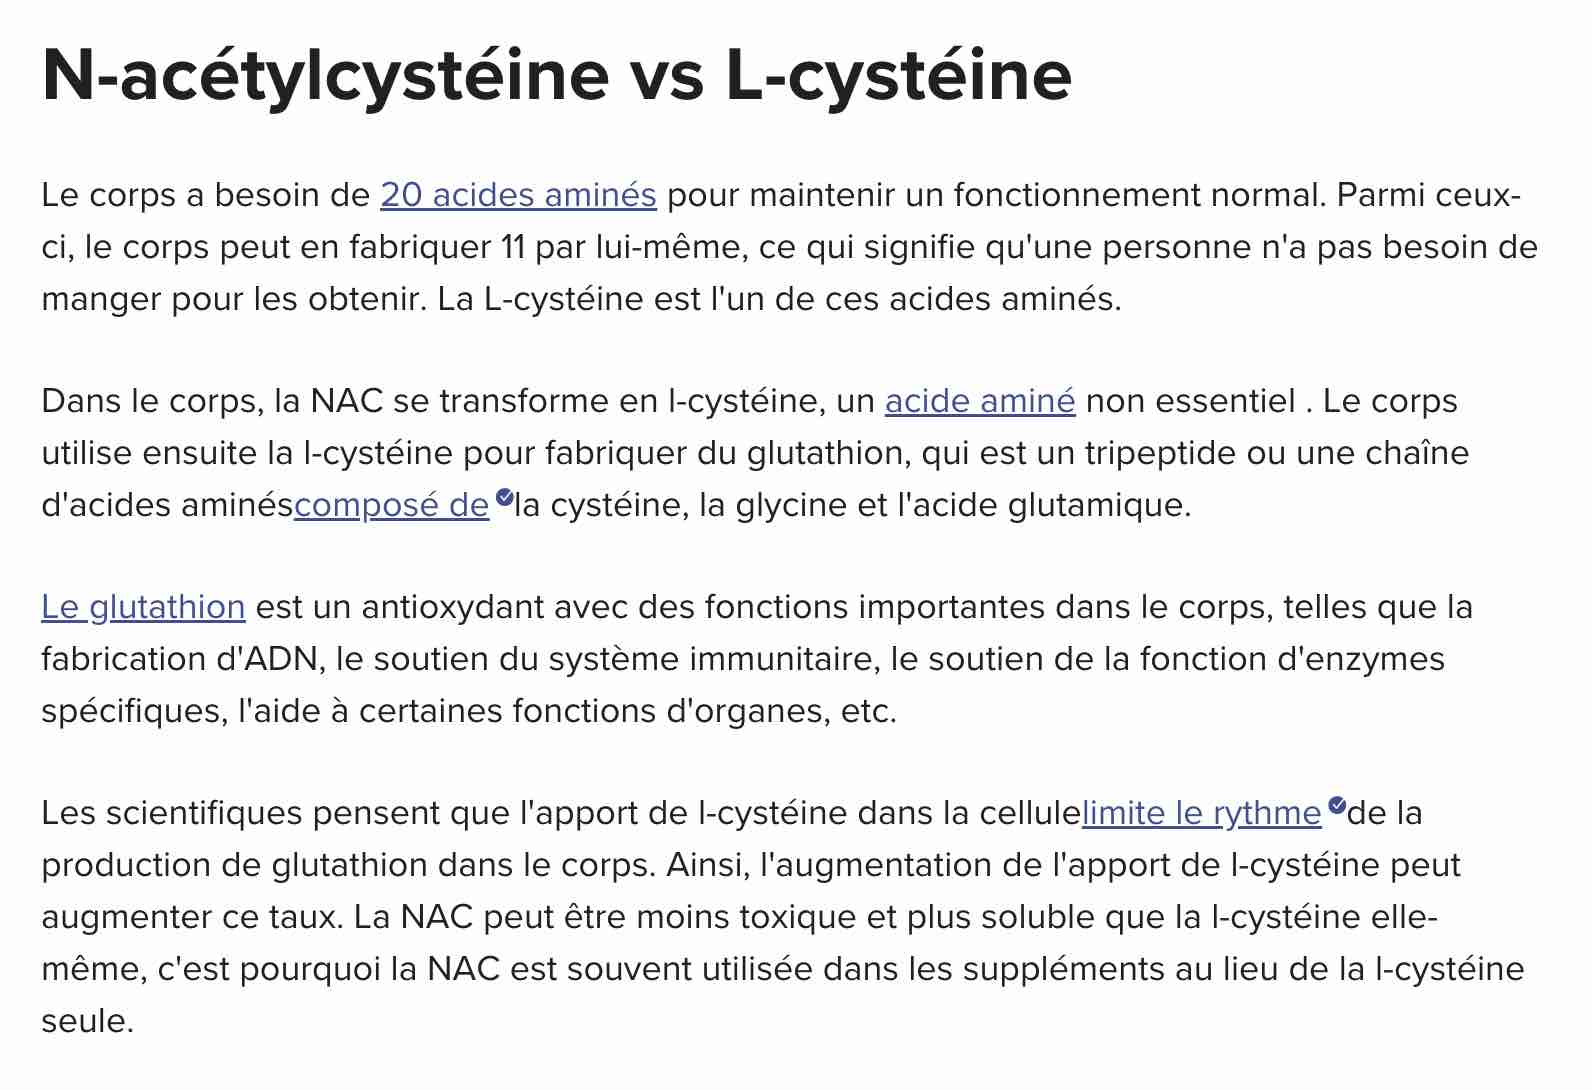 nac-versus-l-cysteine.jpg